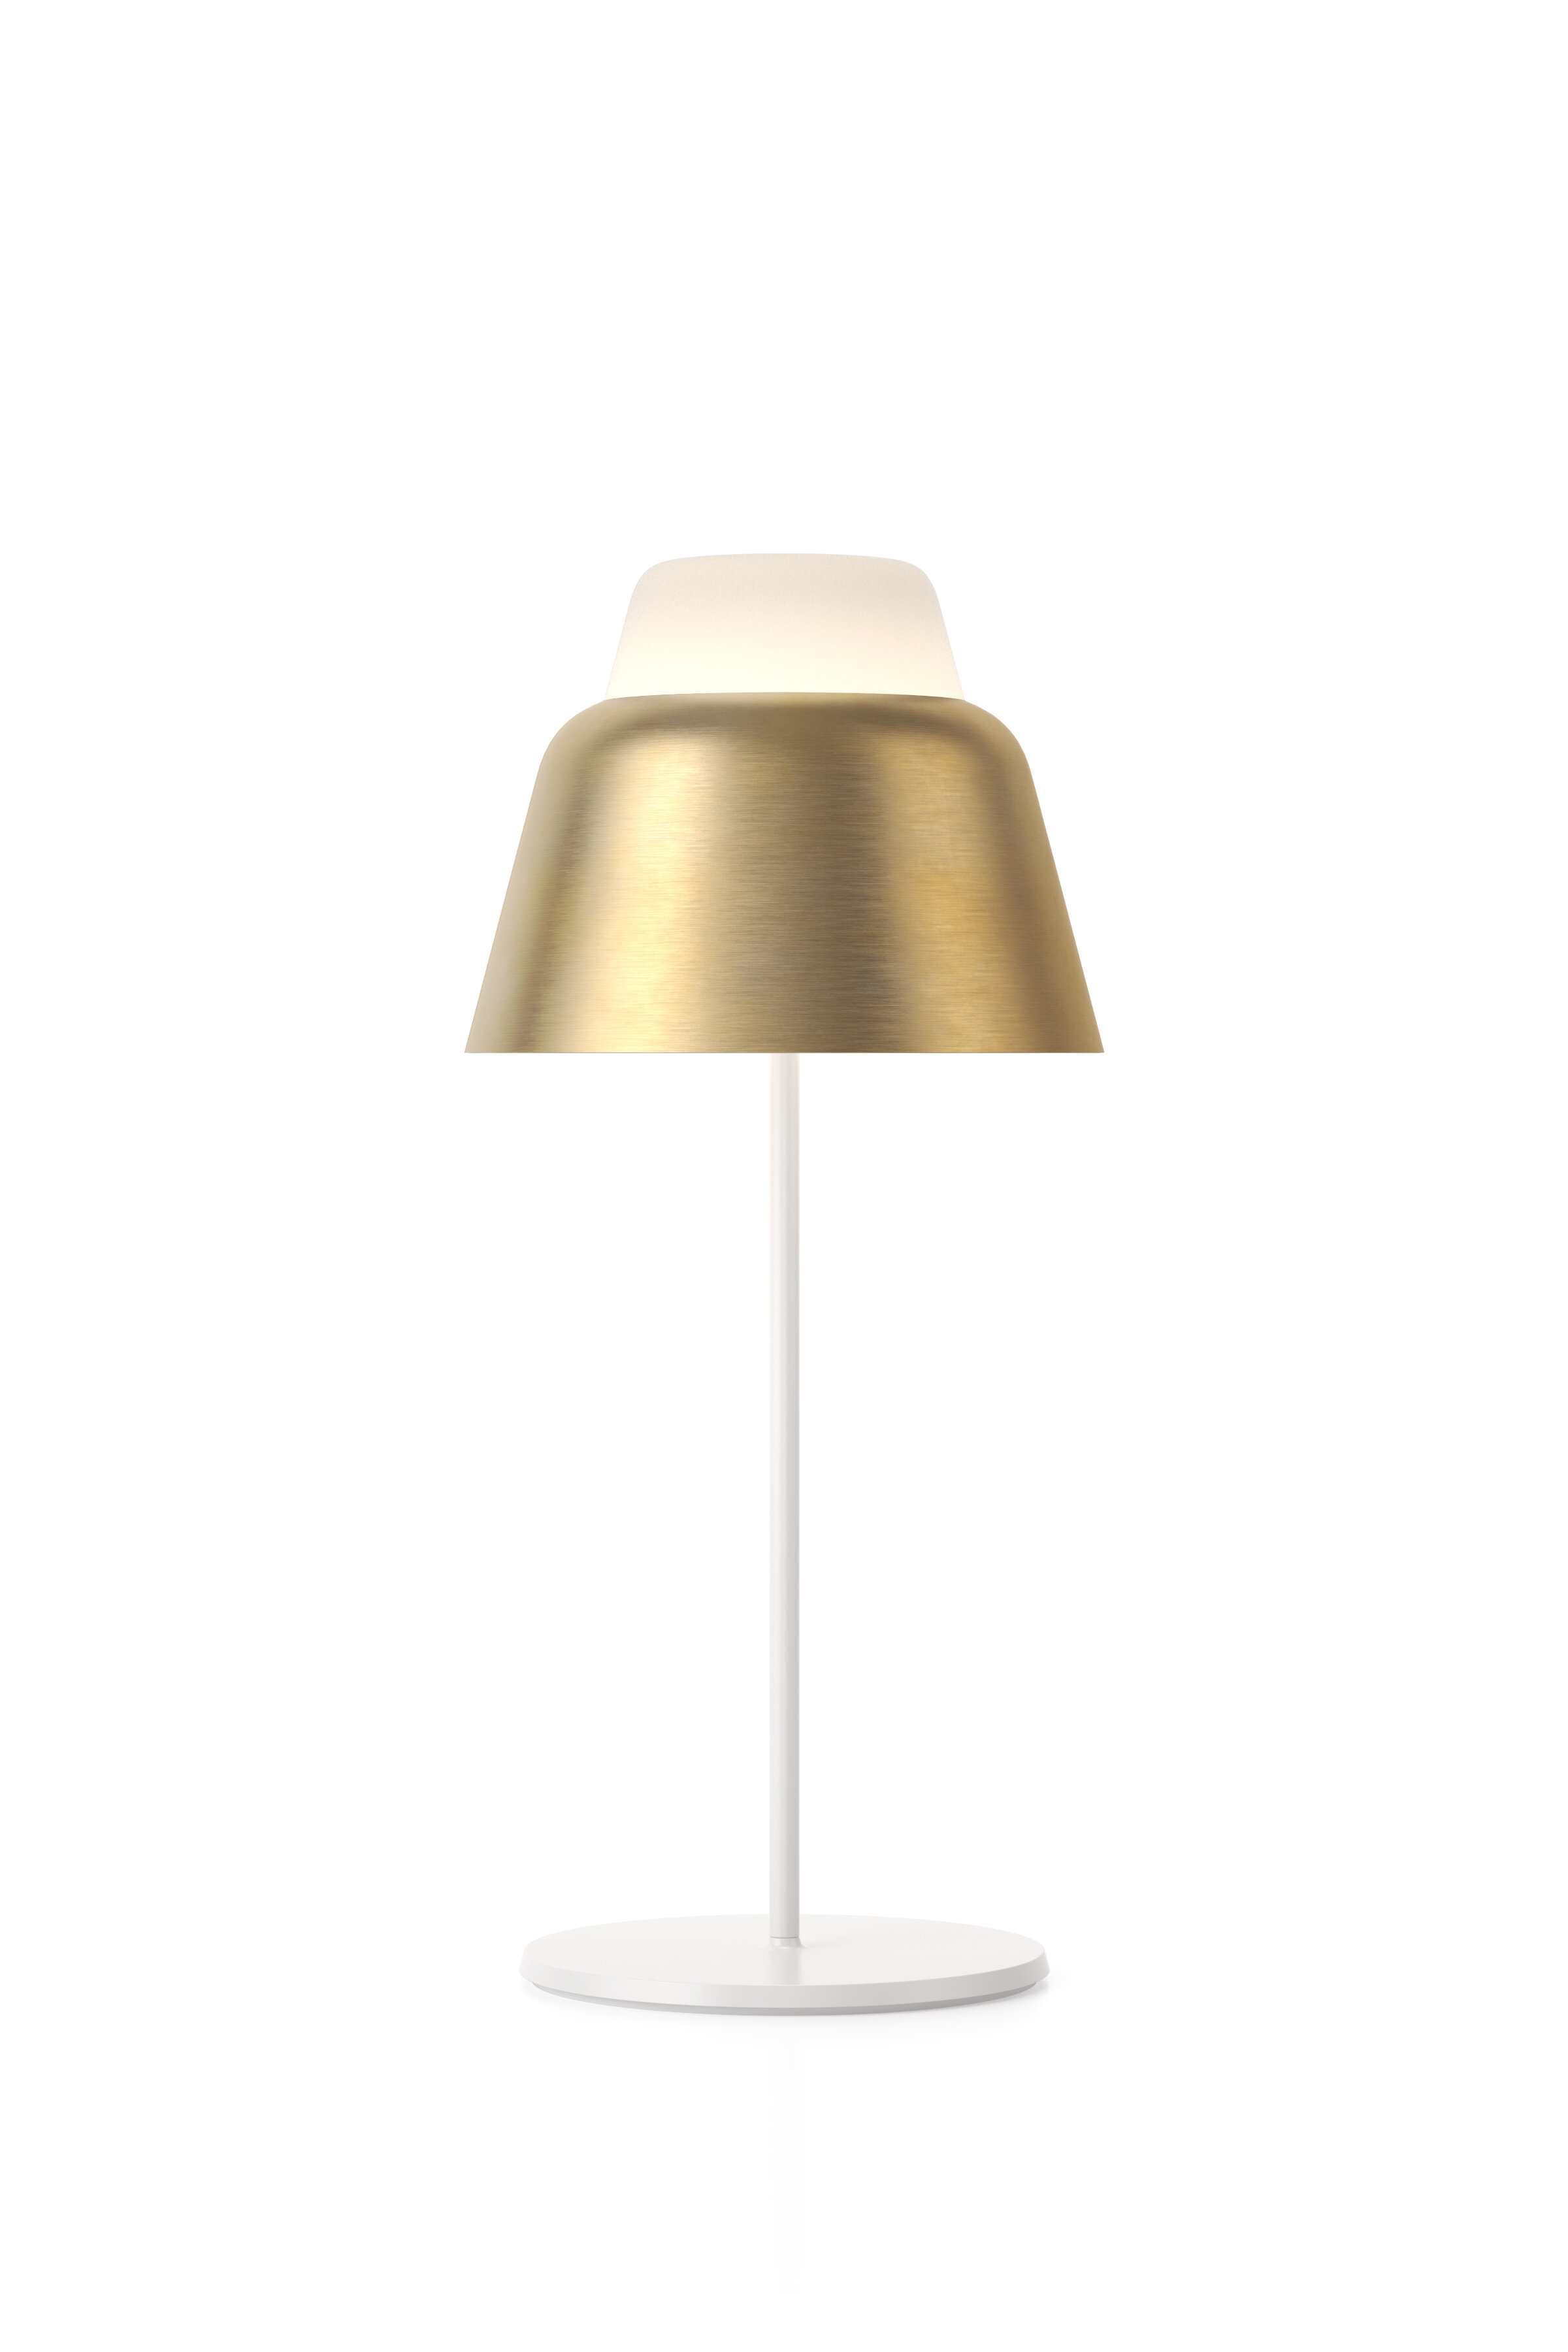 teo-modu-table-lamp-matte-brass-on-cutout.jpg